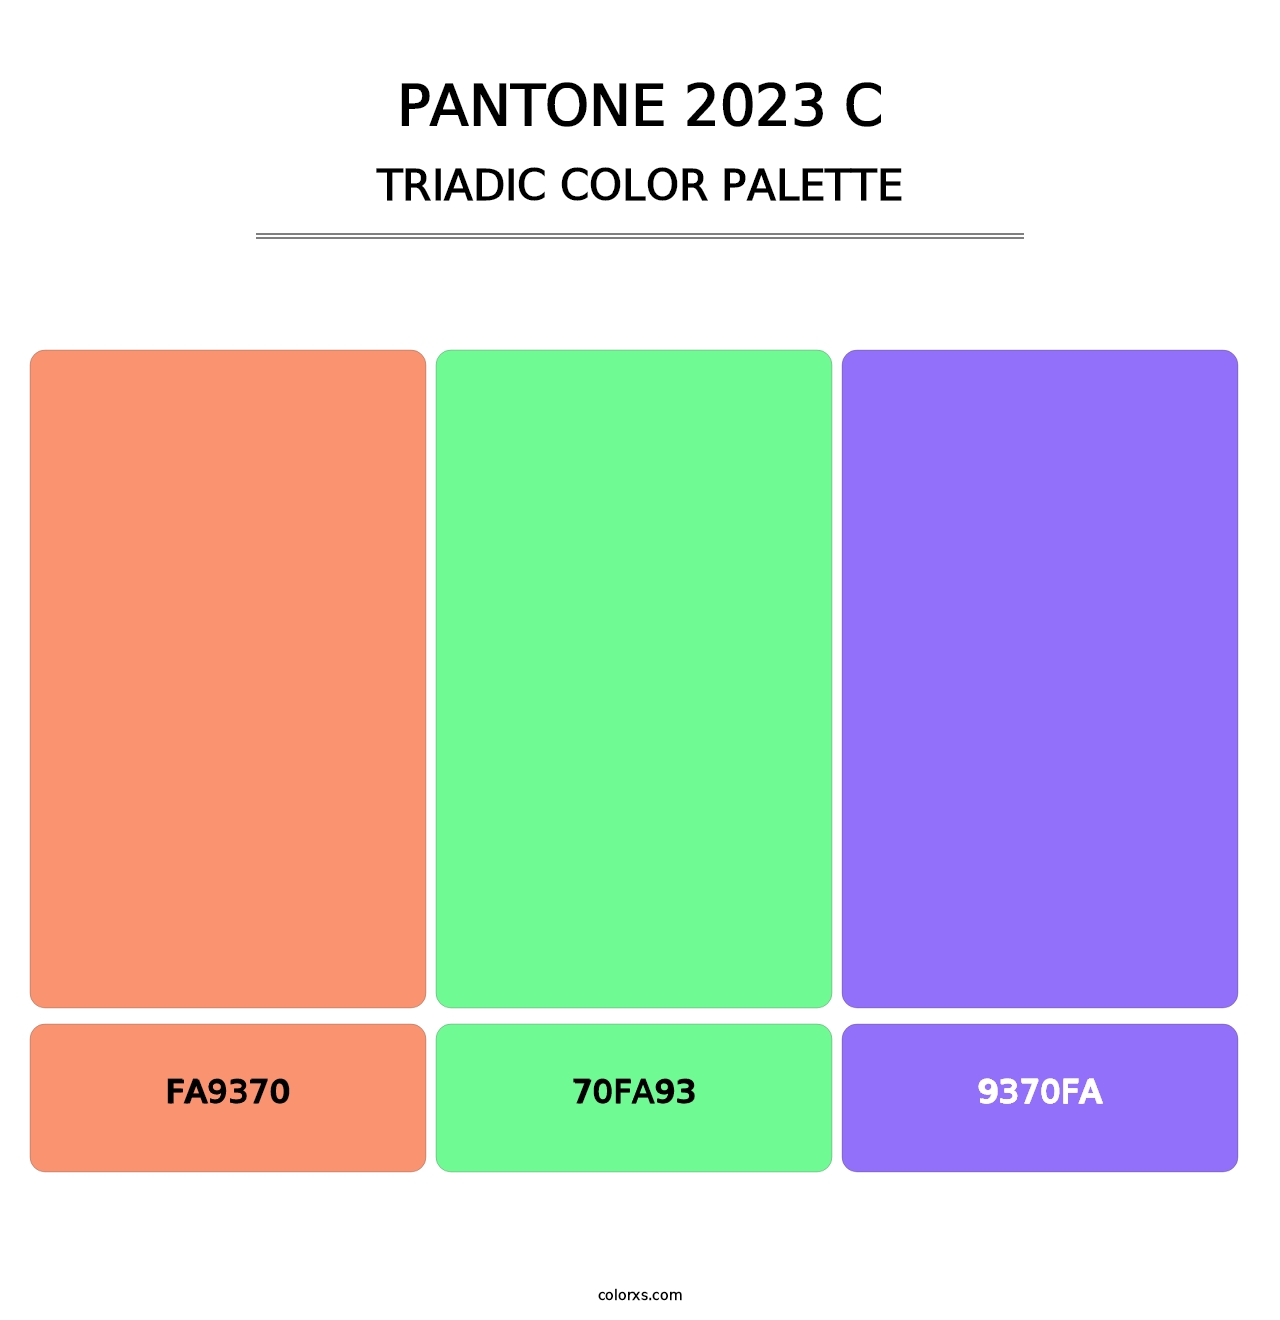 PANTONE 2023 C - Triadic Color Palette